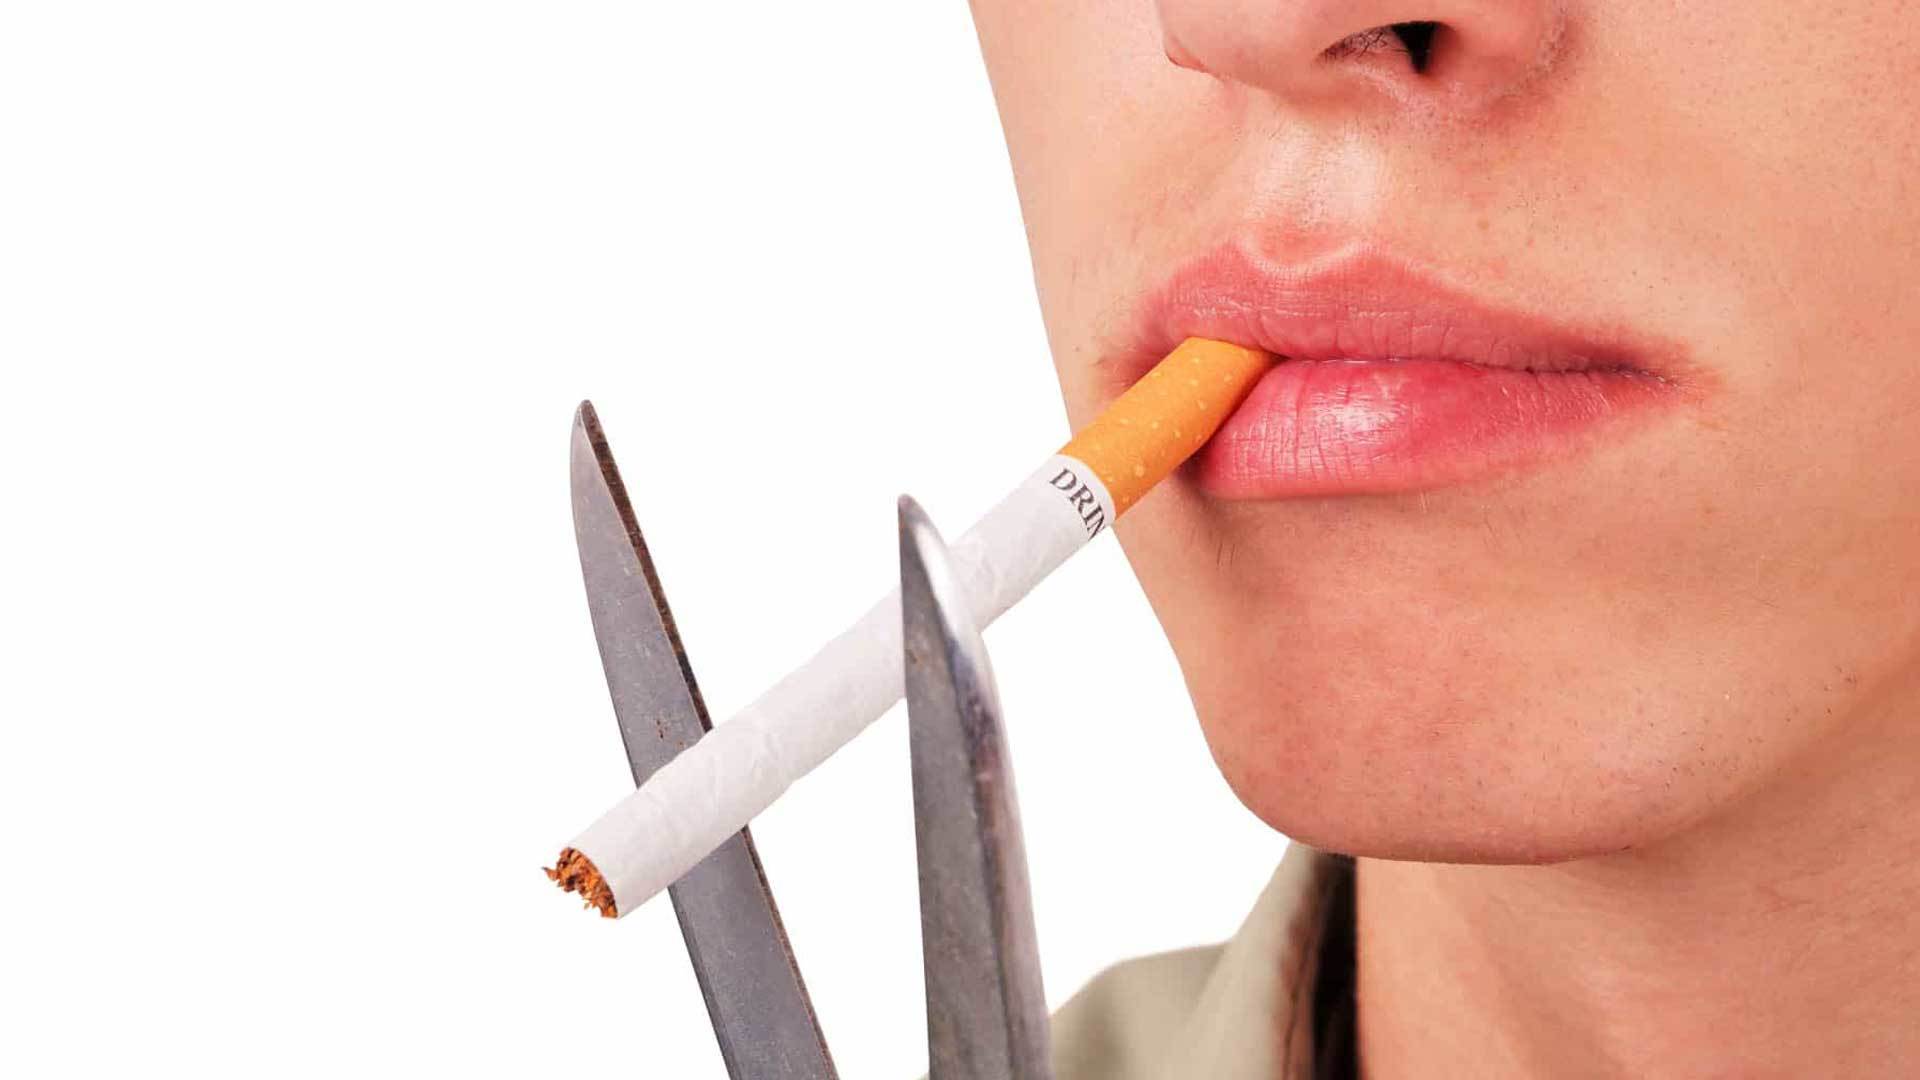 Raucherberatung und Behandlung durch den Arzt